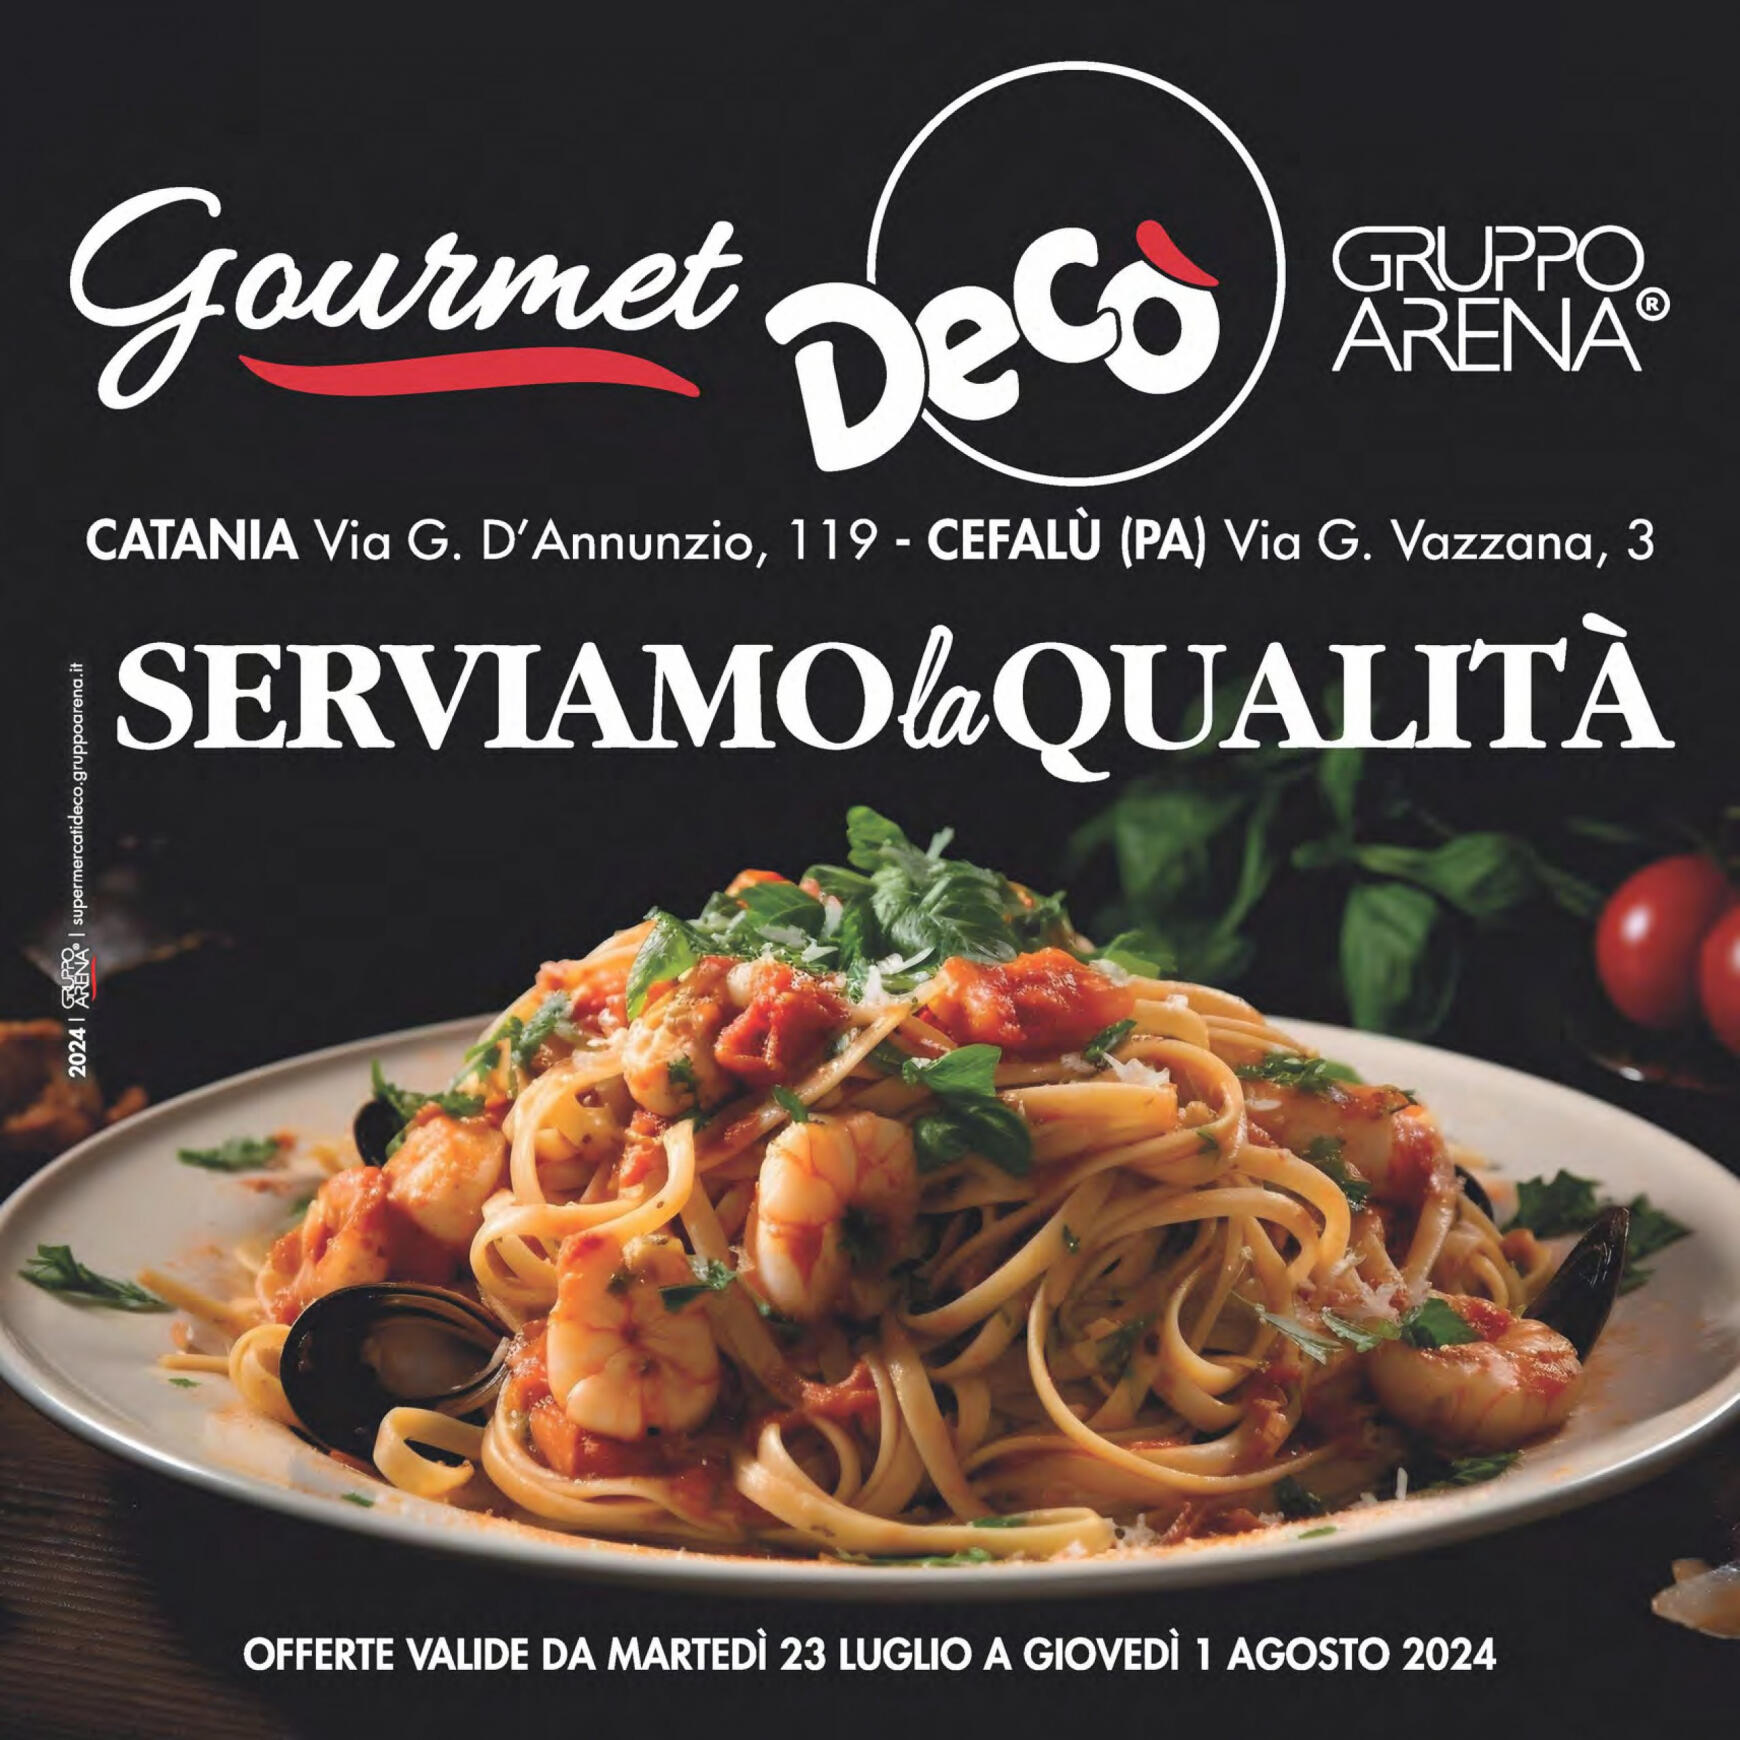 deco - Nuovo volantino Decò - Gourmet 23.07. - 01.08.